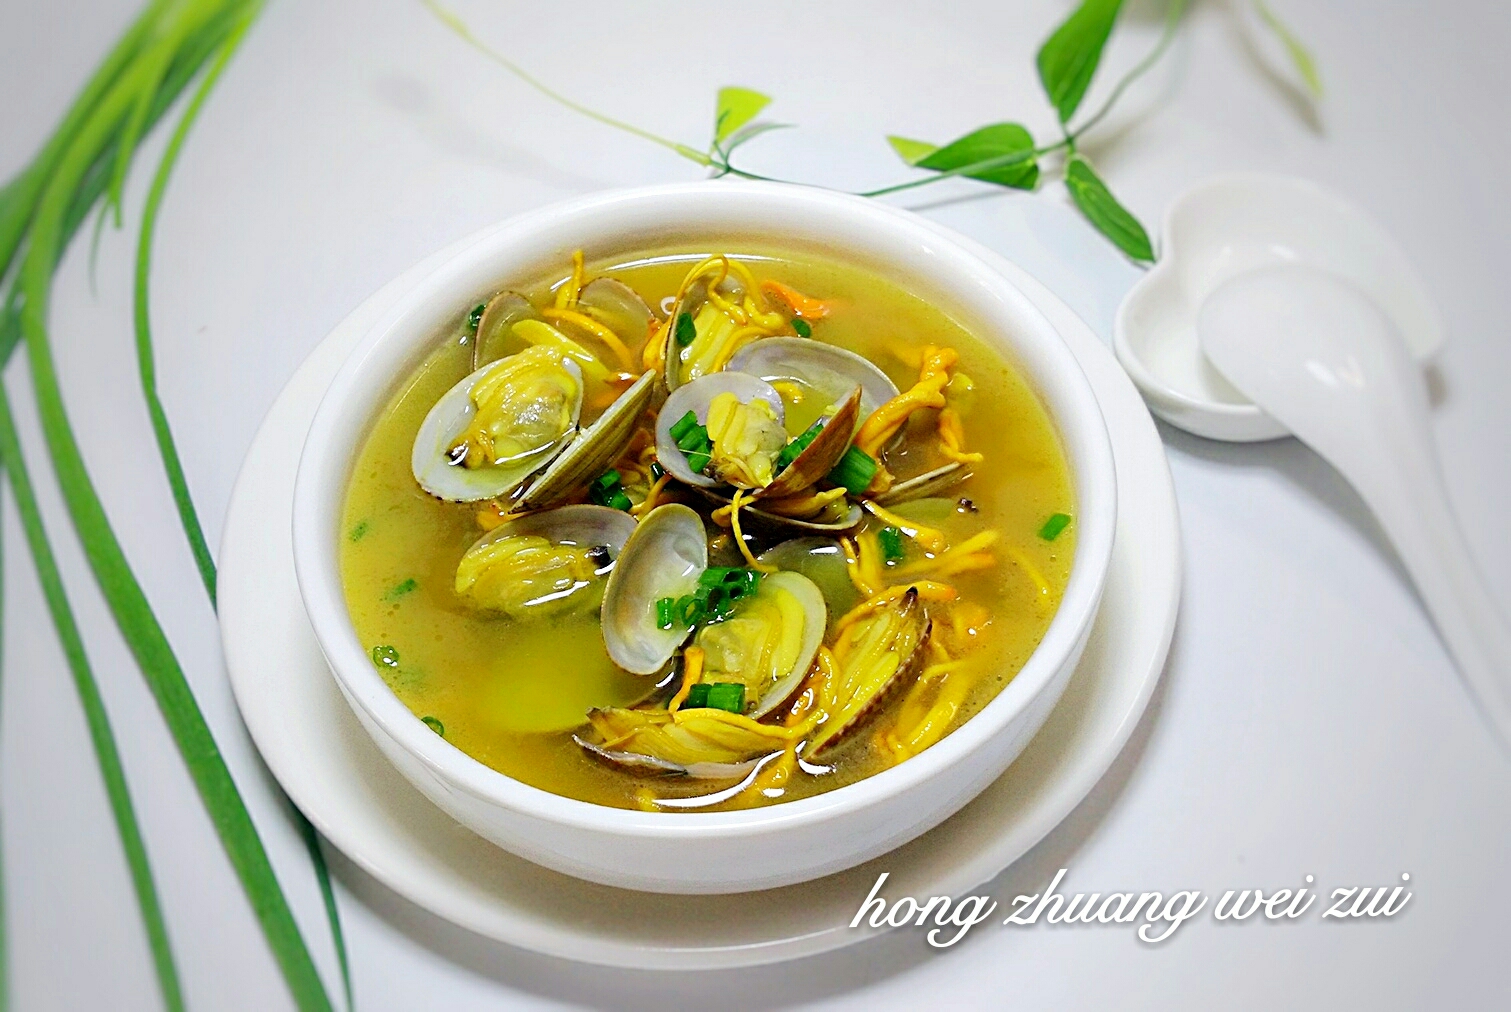 超鲜虫草花蛤蜊汤的做法